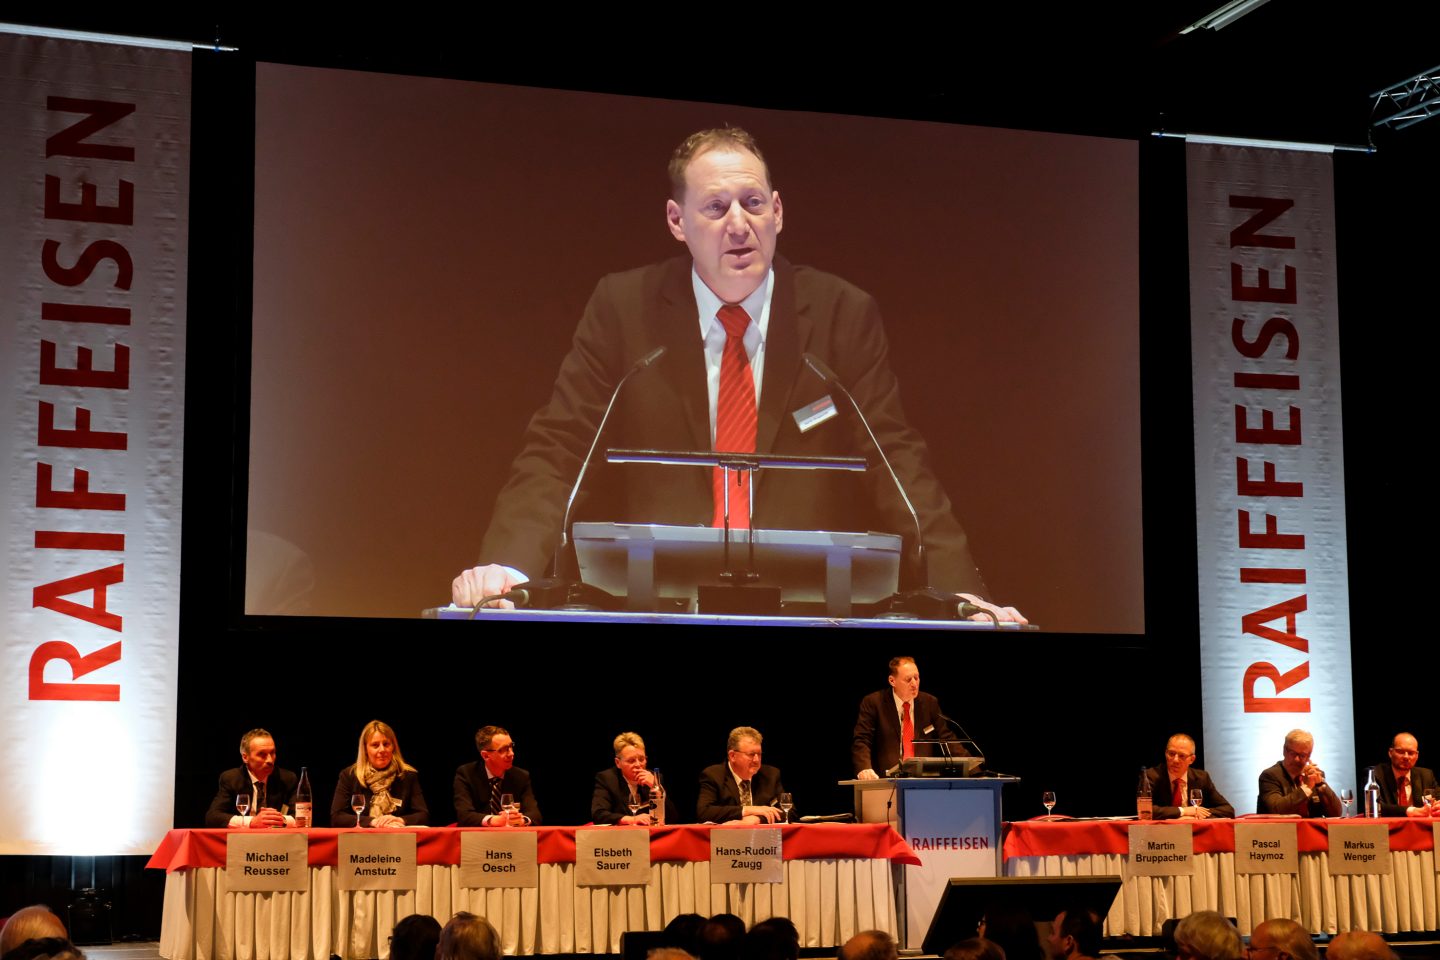 Martin Bruppacher, Vorsitzender der Bankleitung informiert über die Vergangenheit und Zukunft der Finanzwelt.